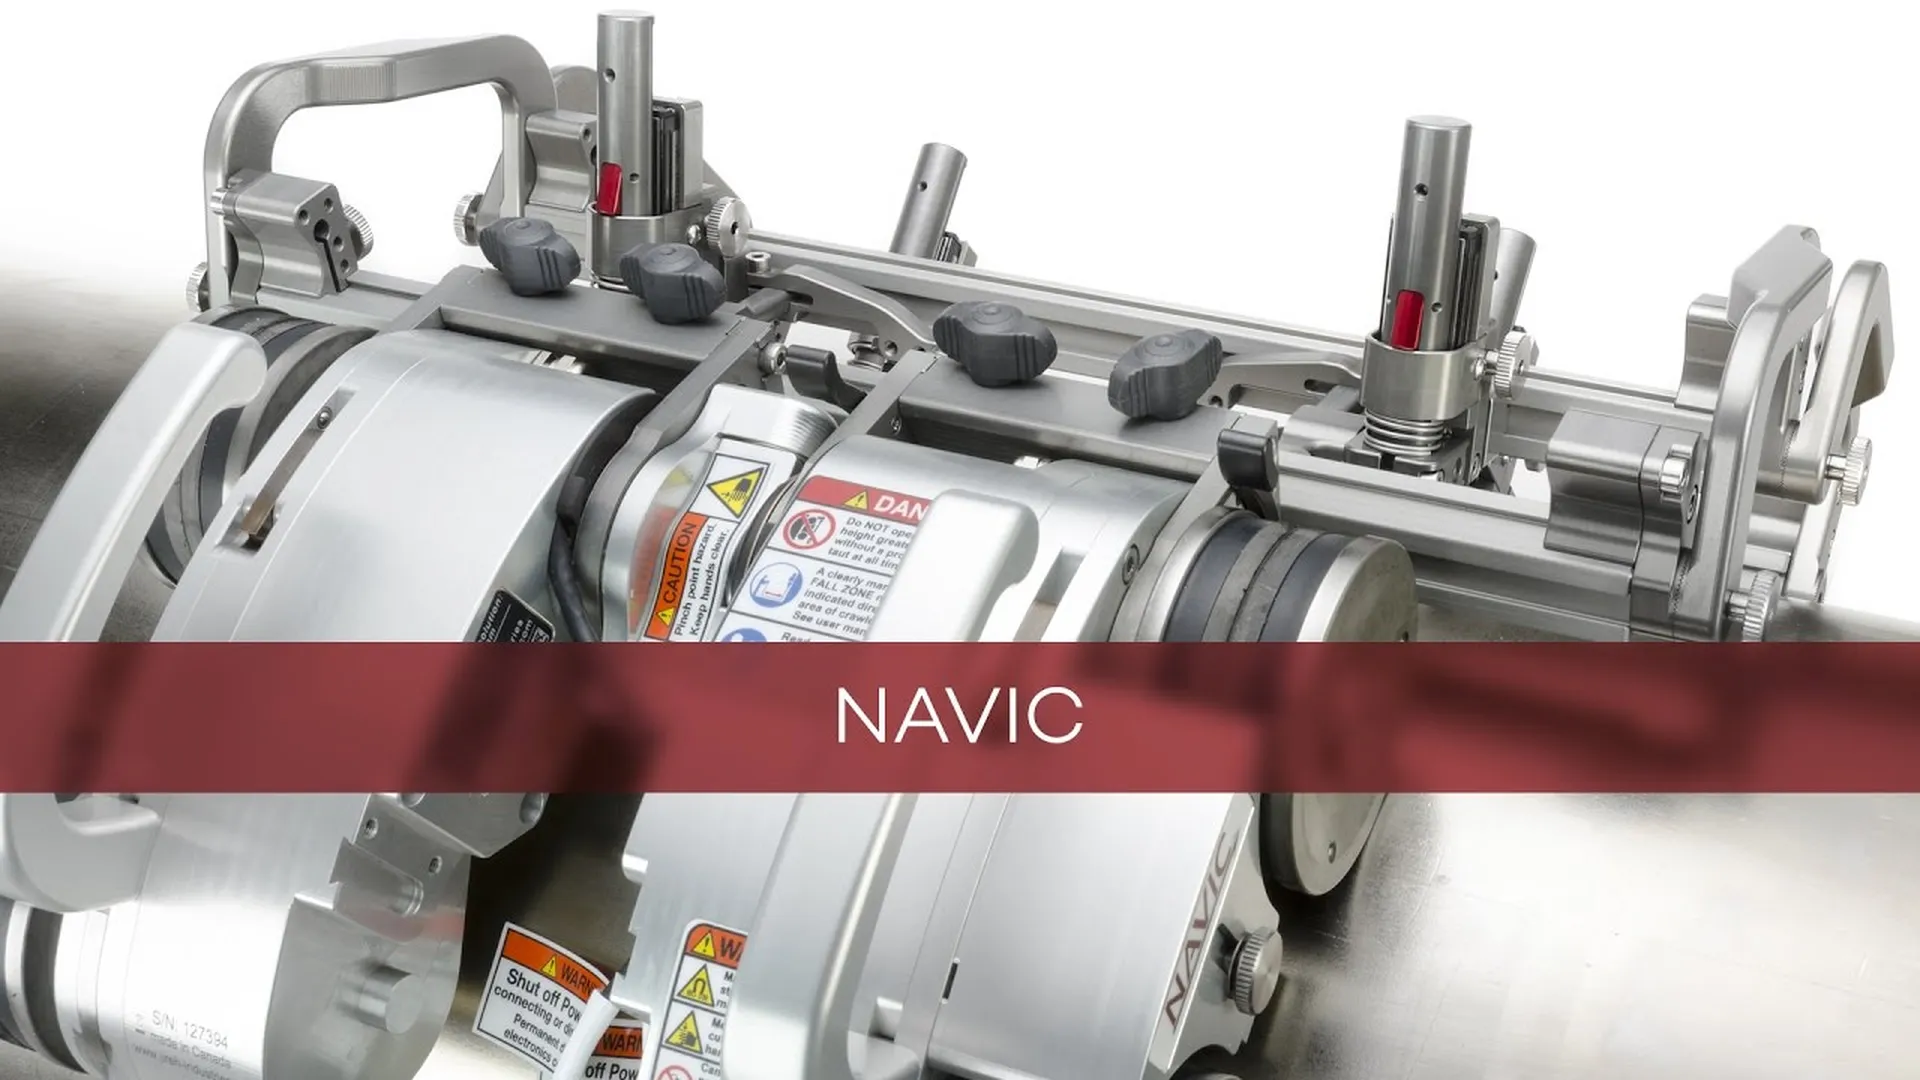 Escáner NAVIC para inspección de soldadura y mapeos de corrosión en tuberías. (Fuente: JIREH)